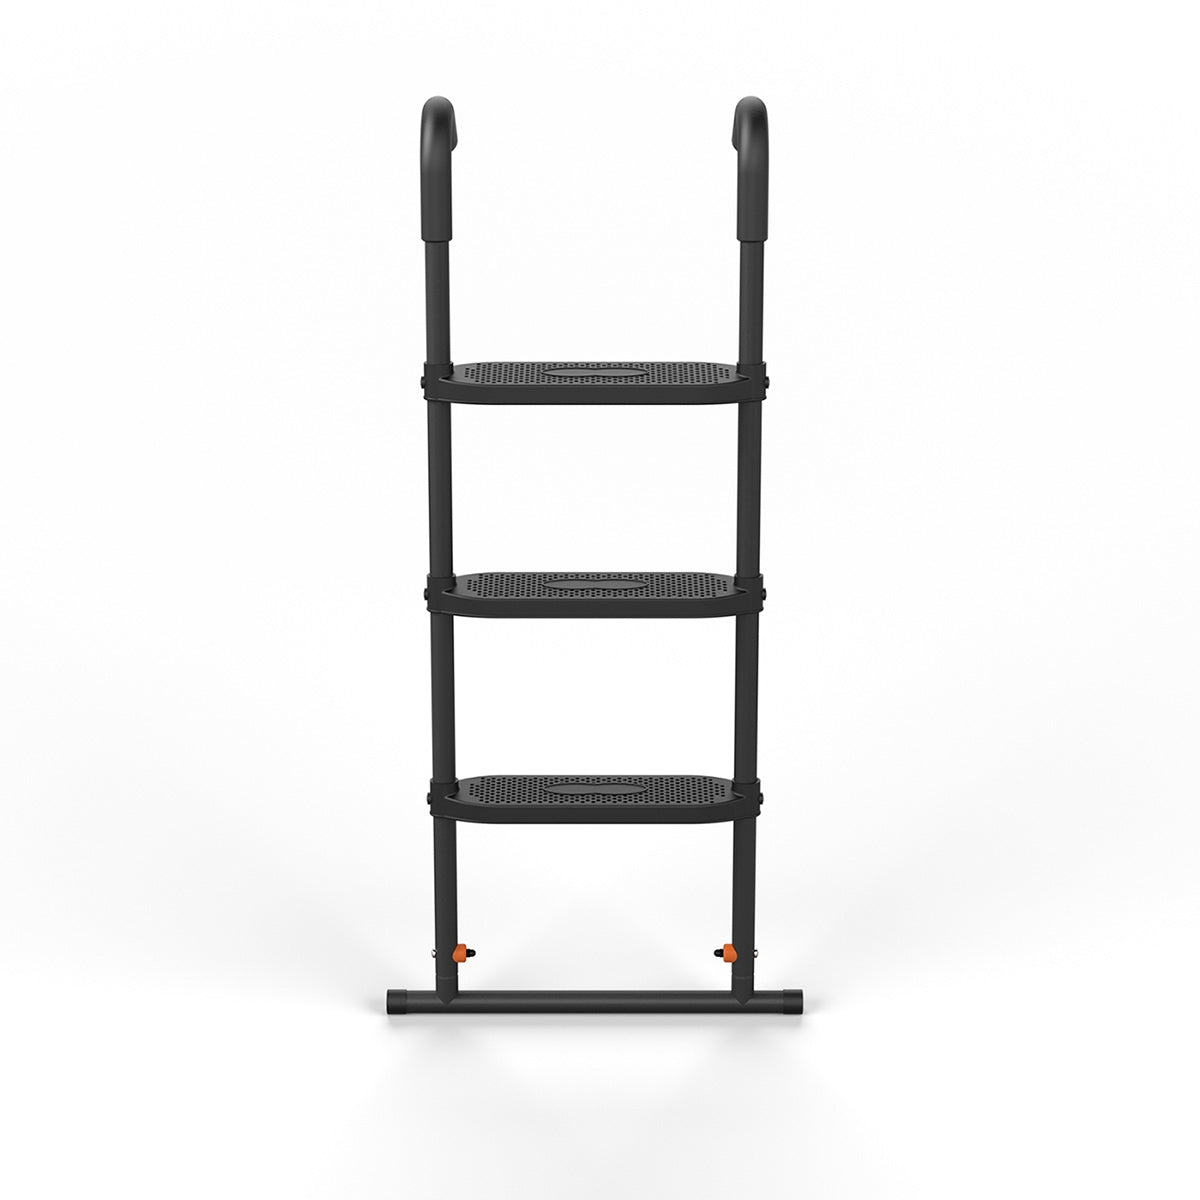 ACON Air 16 Sport Ladder